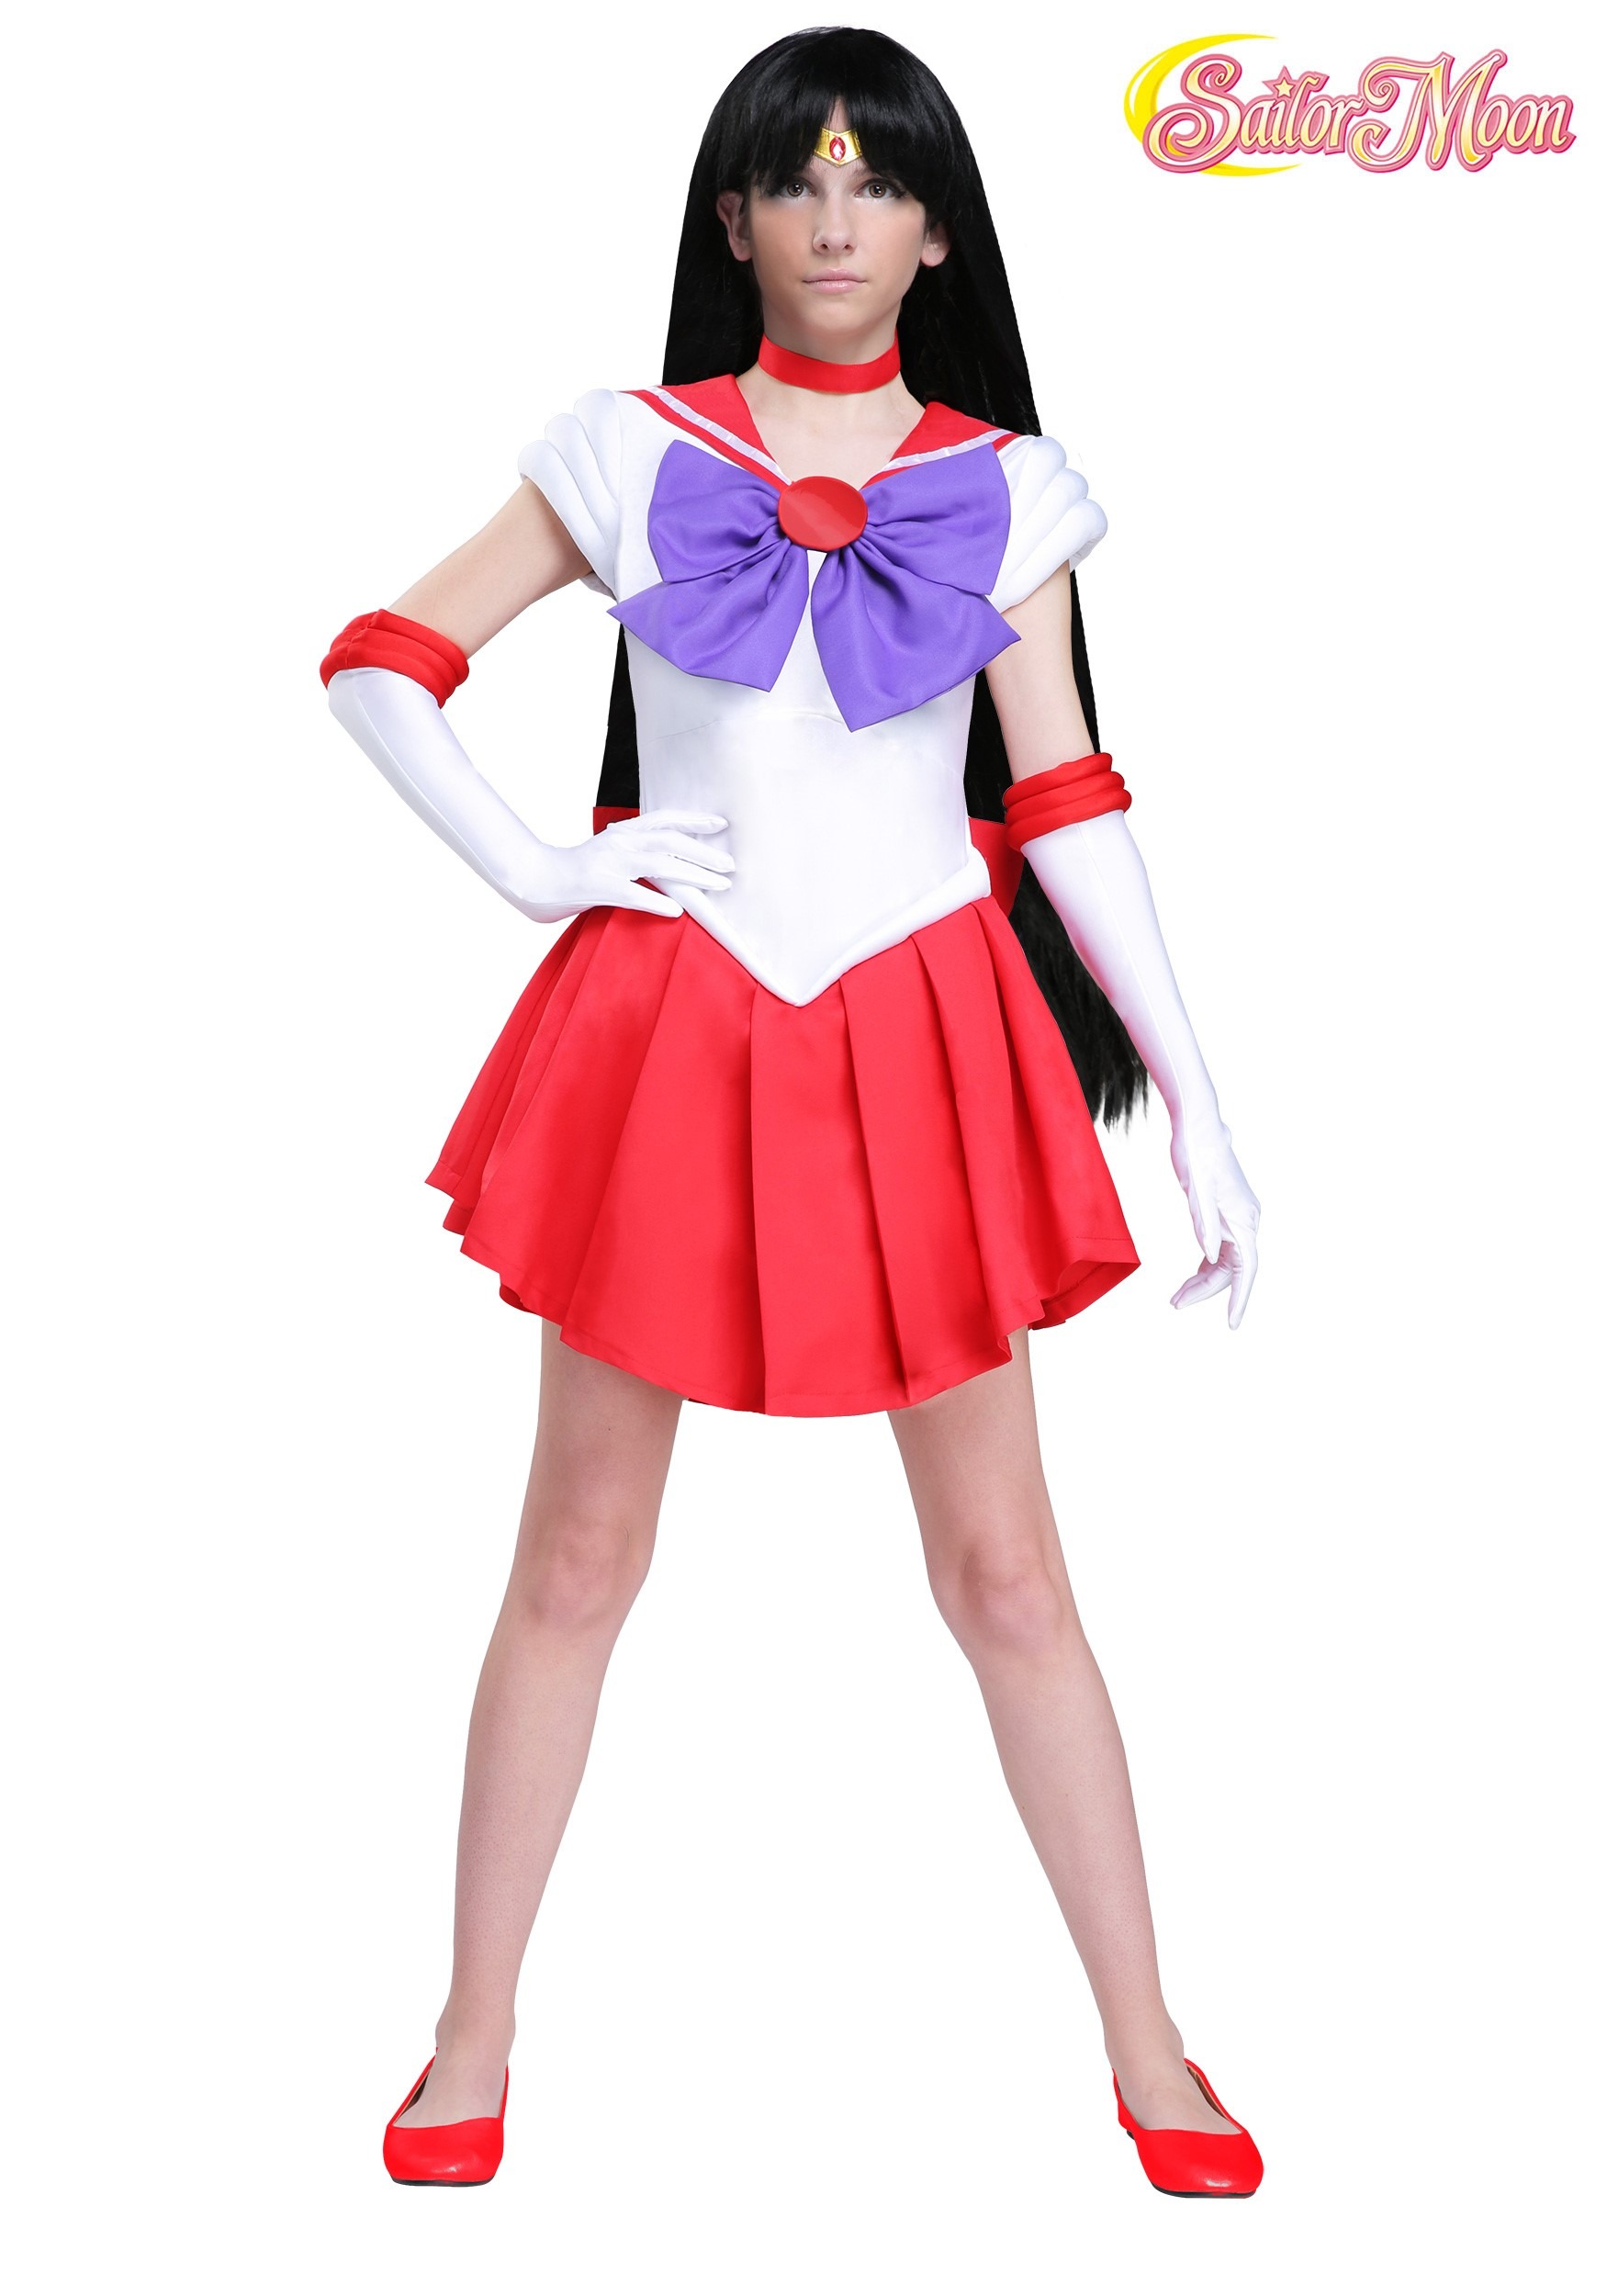 Sailor Moon: Sailor Mars Women's Costume